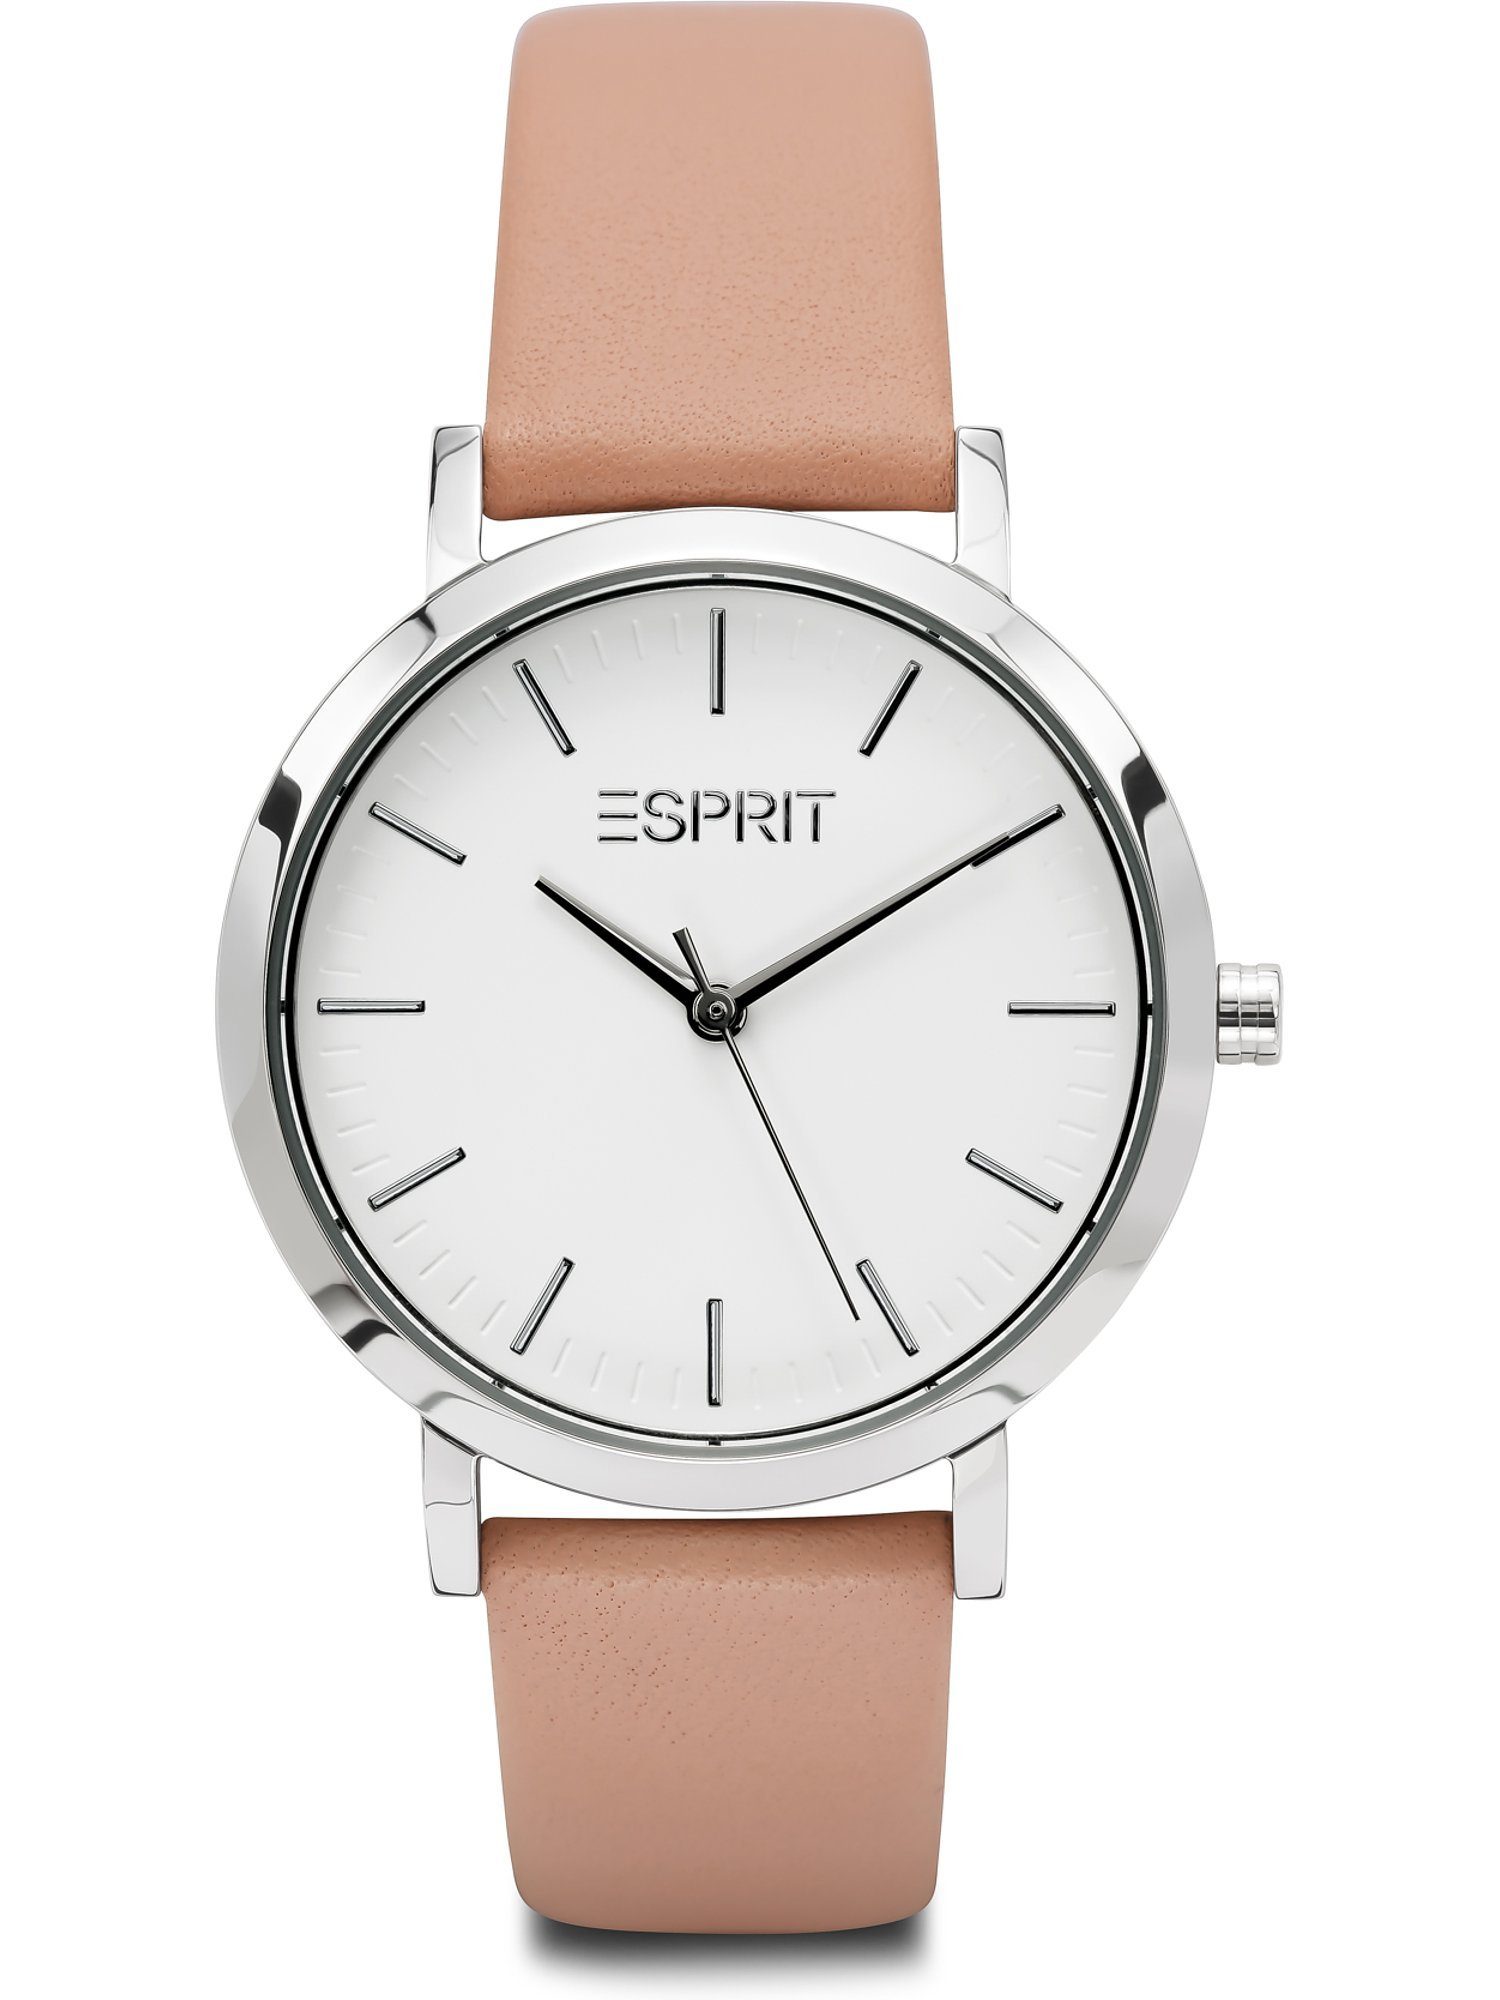 Esprit Quarzuhr ESPRIT Damen-Uhren Analog Quarz, Klassikuhr rosé